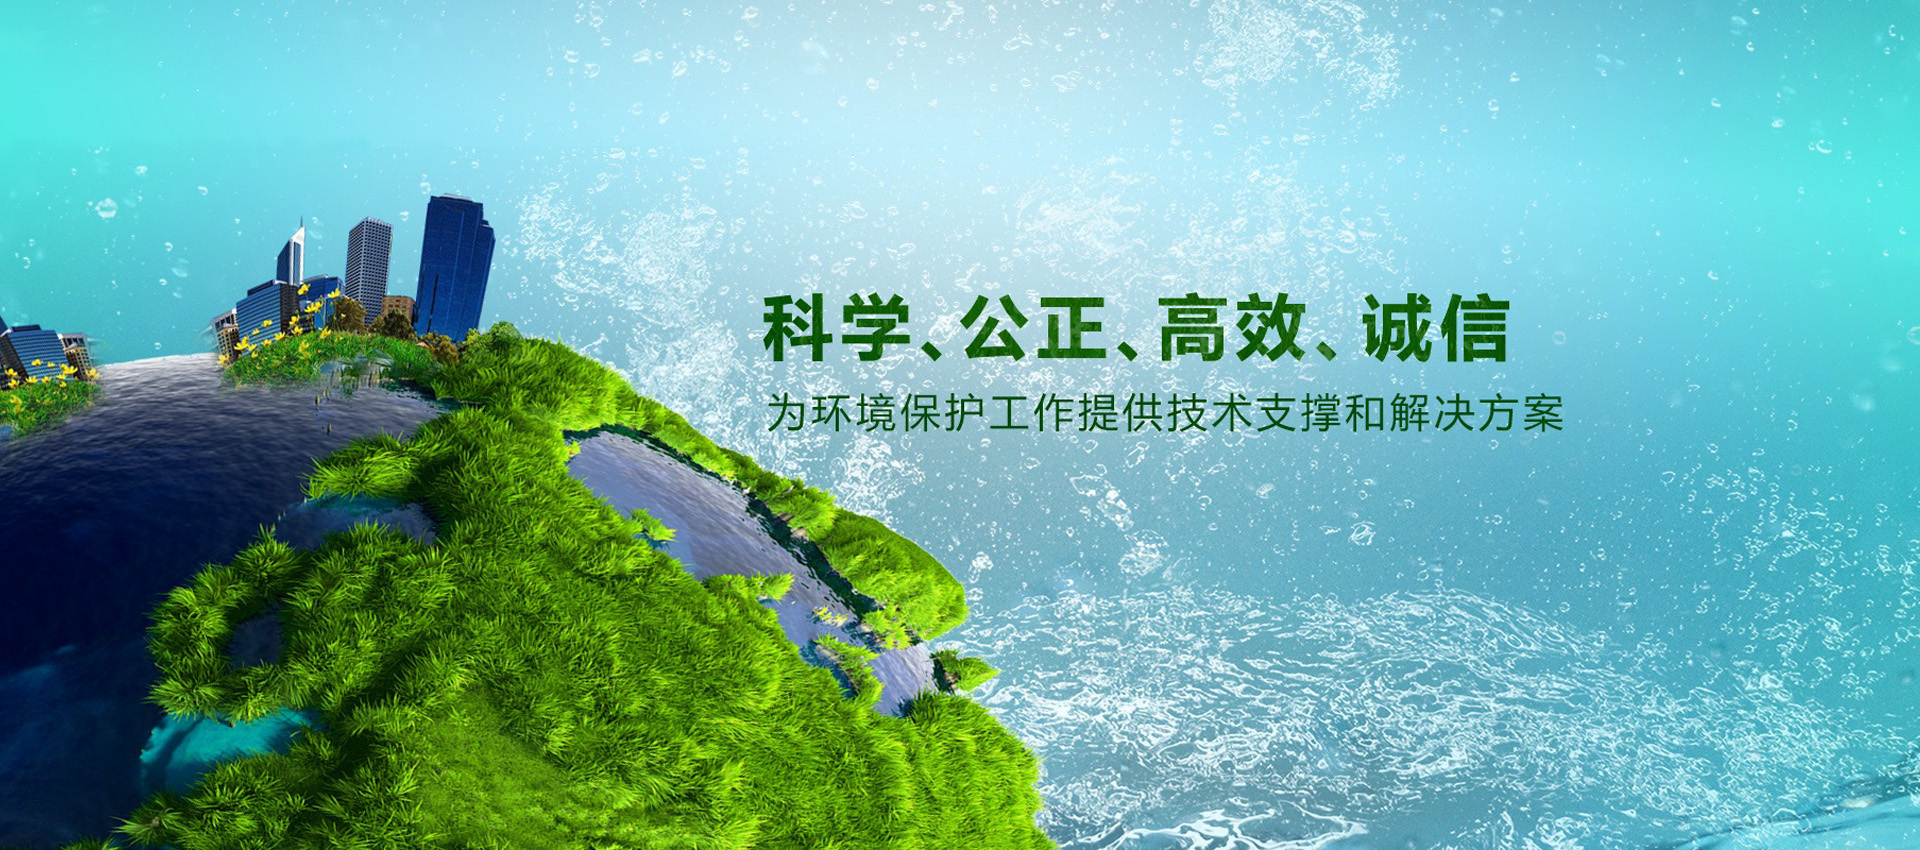 江苏国松环境科技开发有限公司